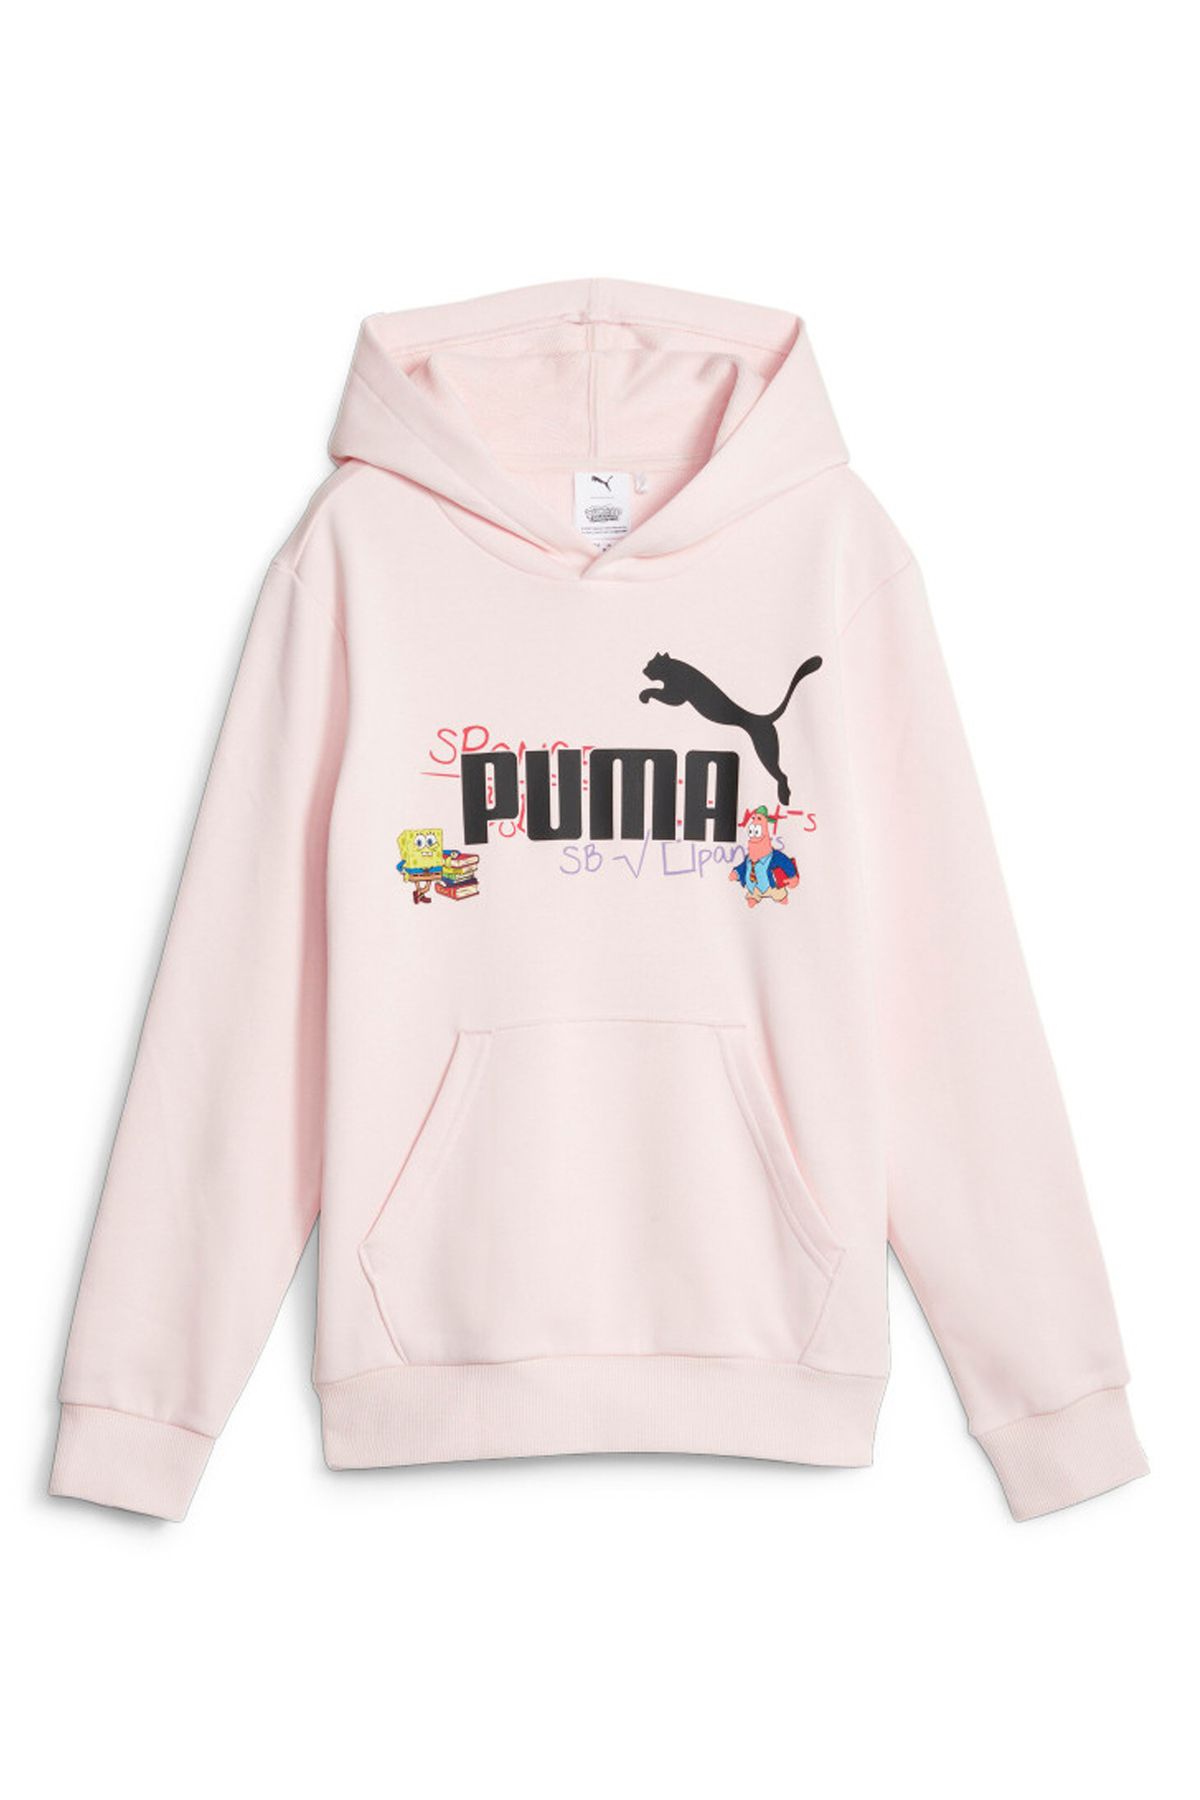 Puma Pembe Erkek Çocuk Kapüşonlu Uzun Kollu Düz Sweatshirt 62221324 X Spongebob Hoodie